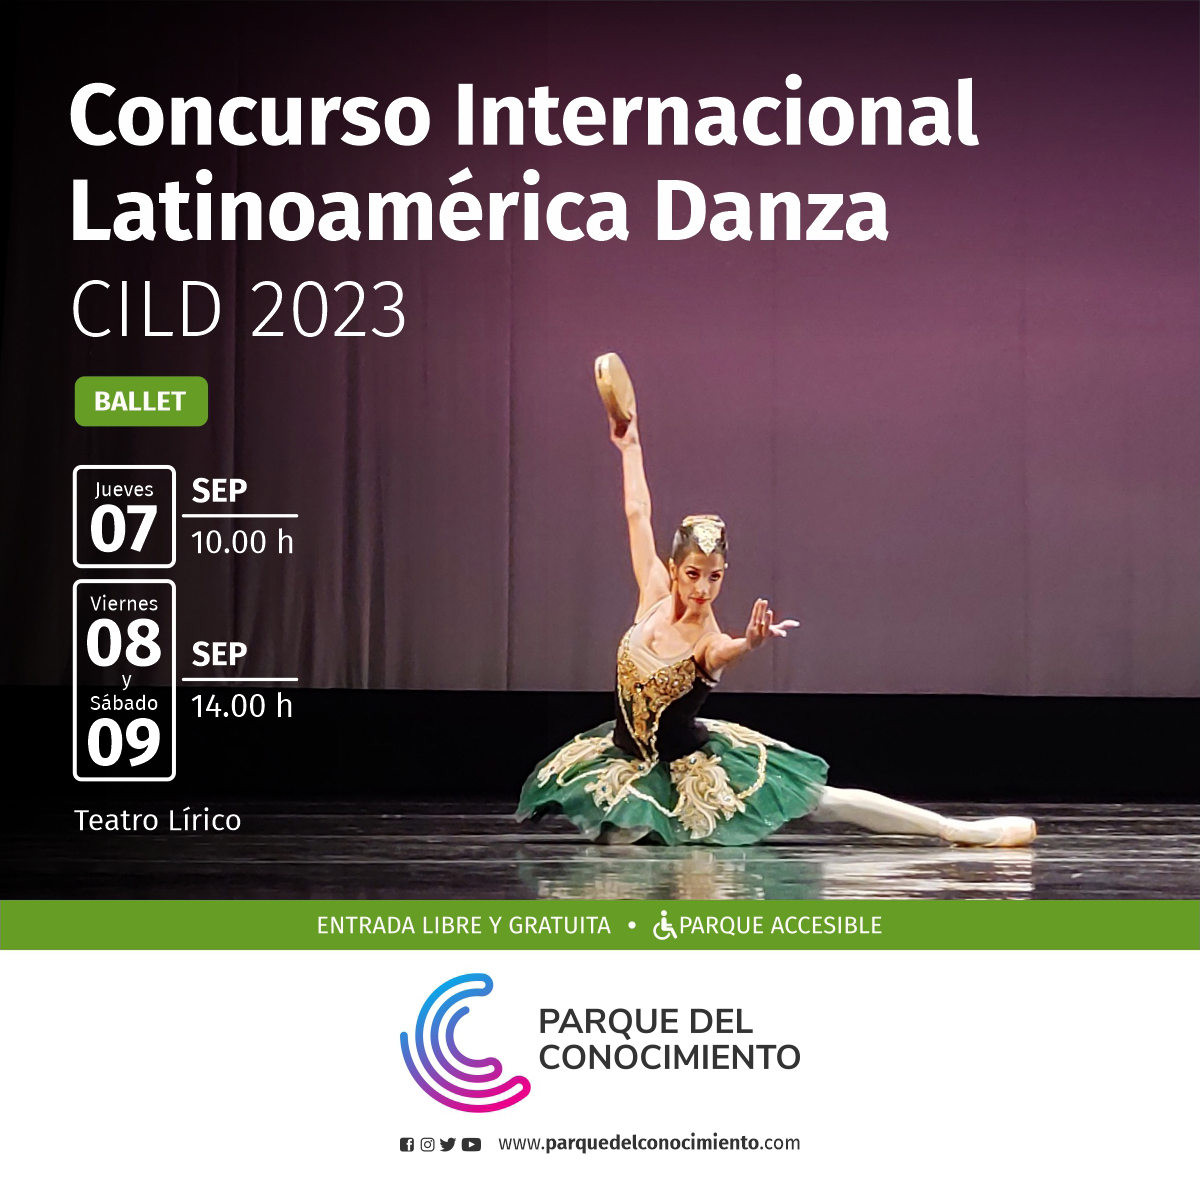 Se realizará una nueva edición del Concurso Internacional Latinoamérica Danza en el Parque del Conocimiento imagen-2